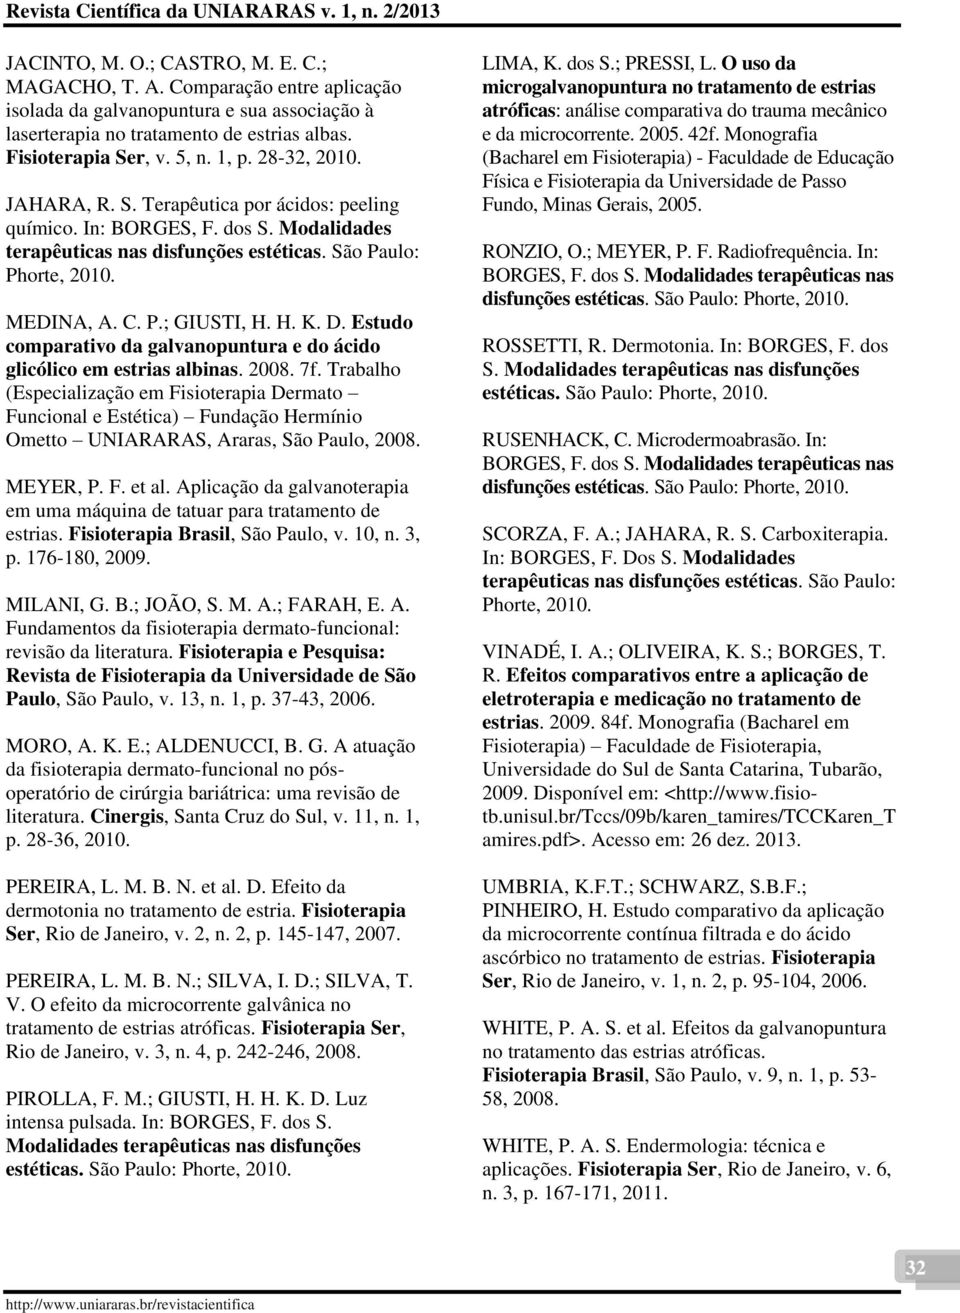 Estudo comparativo da galvanopuntura e do ácido glicólico em estrias albinas. 2008. 7f.